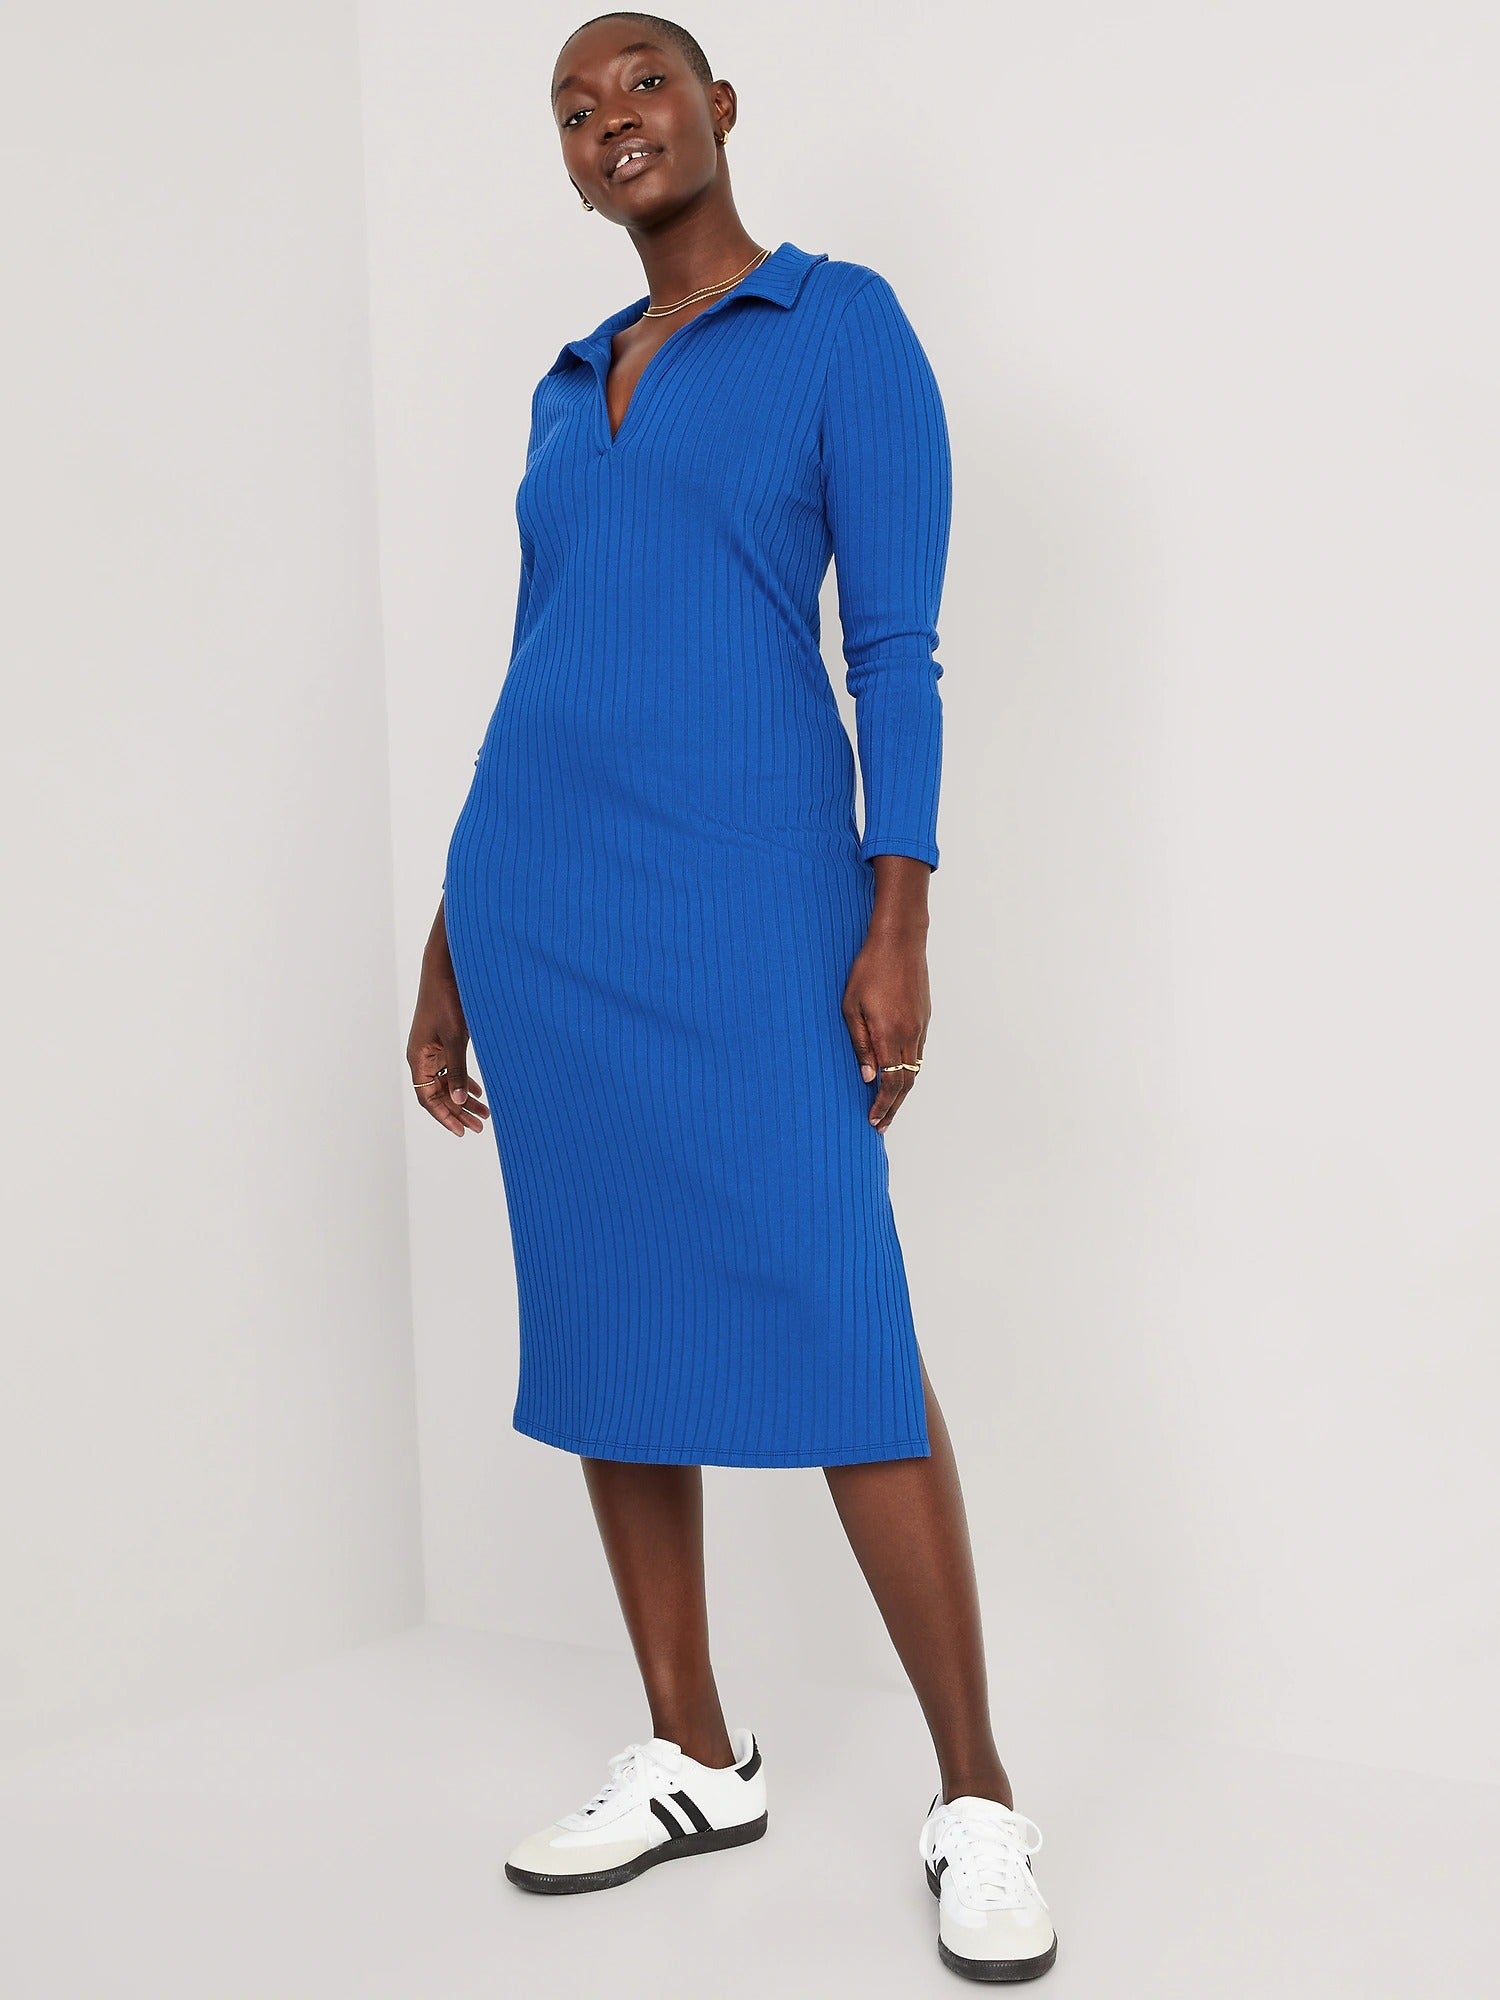 model wearing the midi polo dress in blue